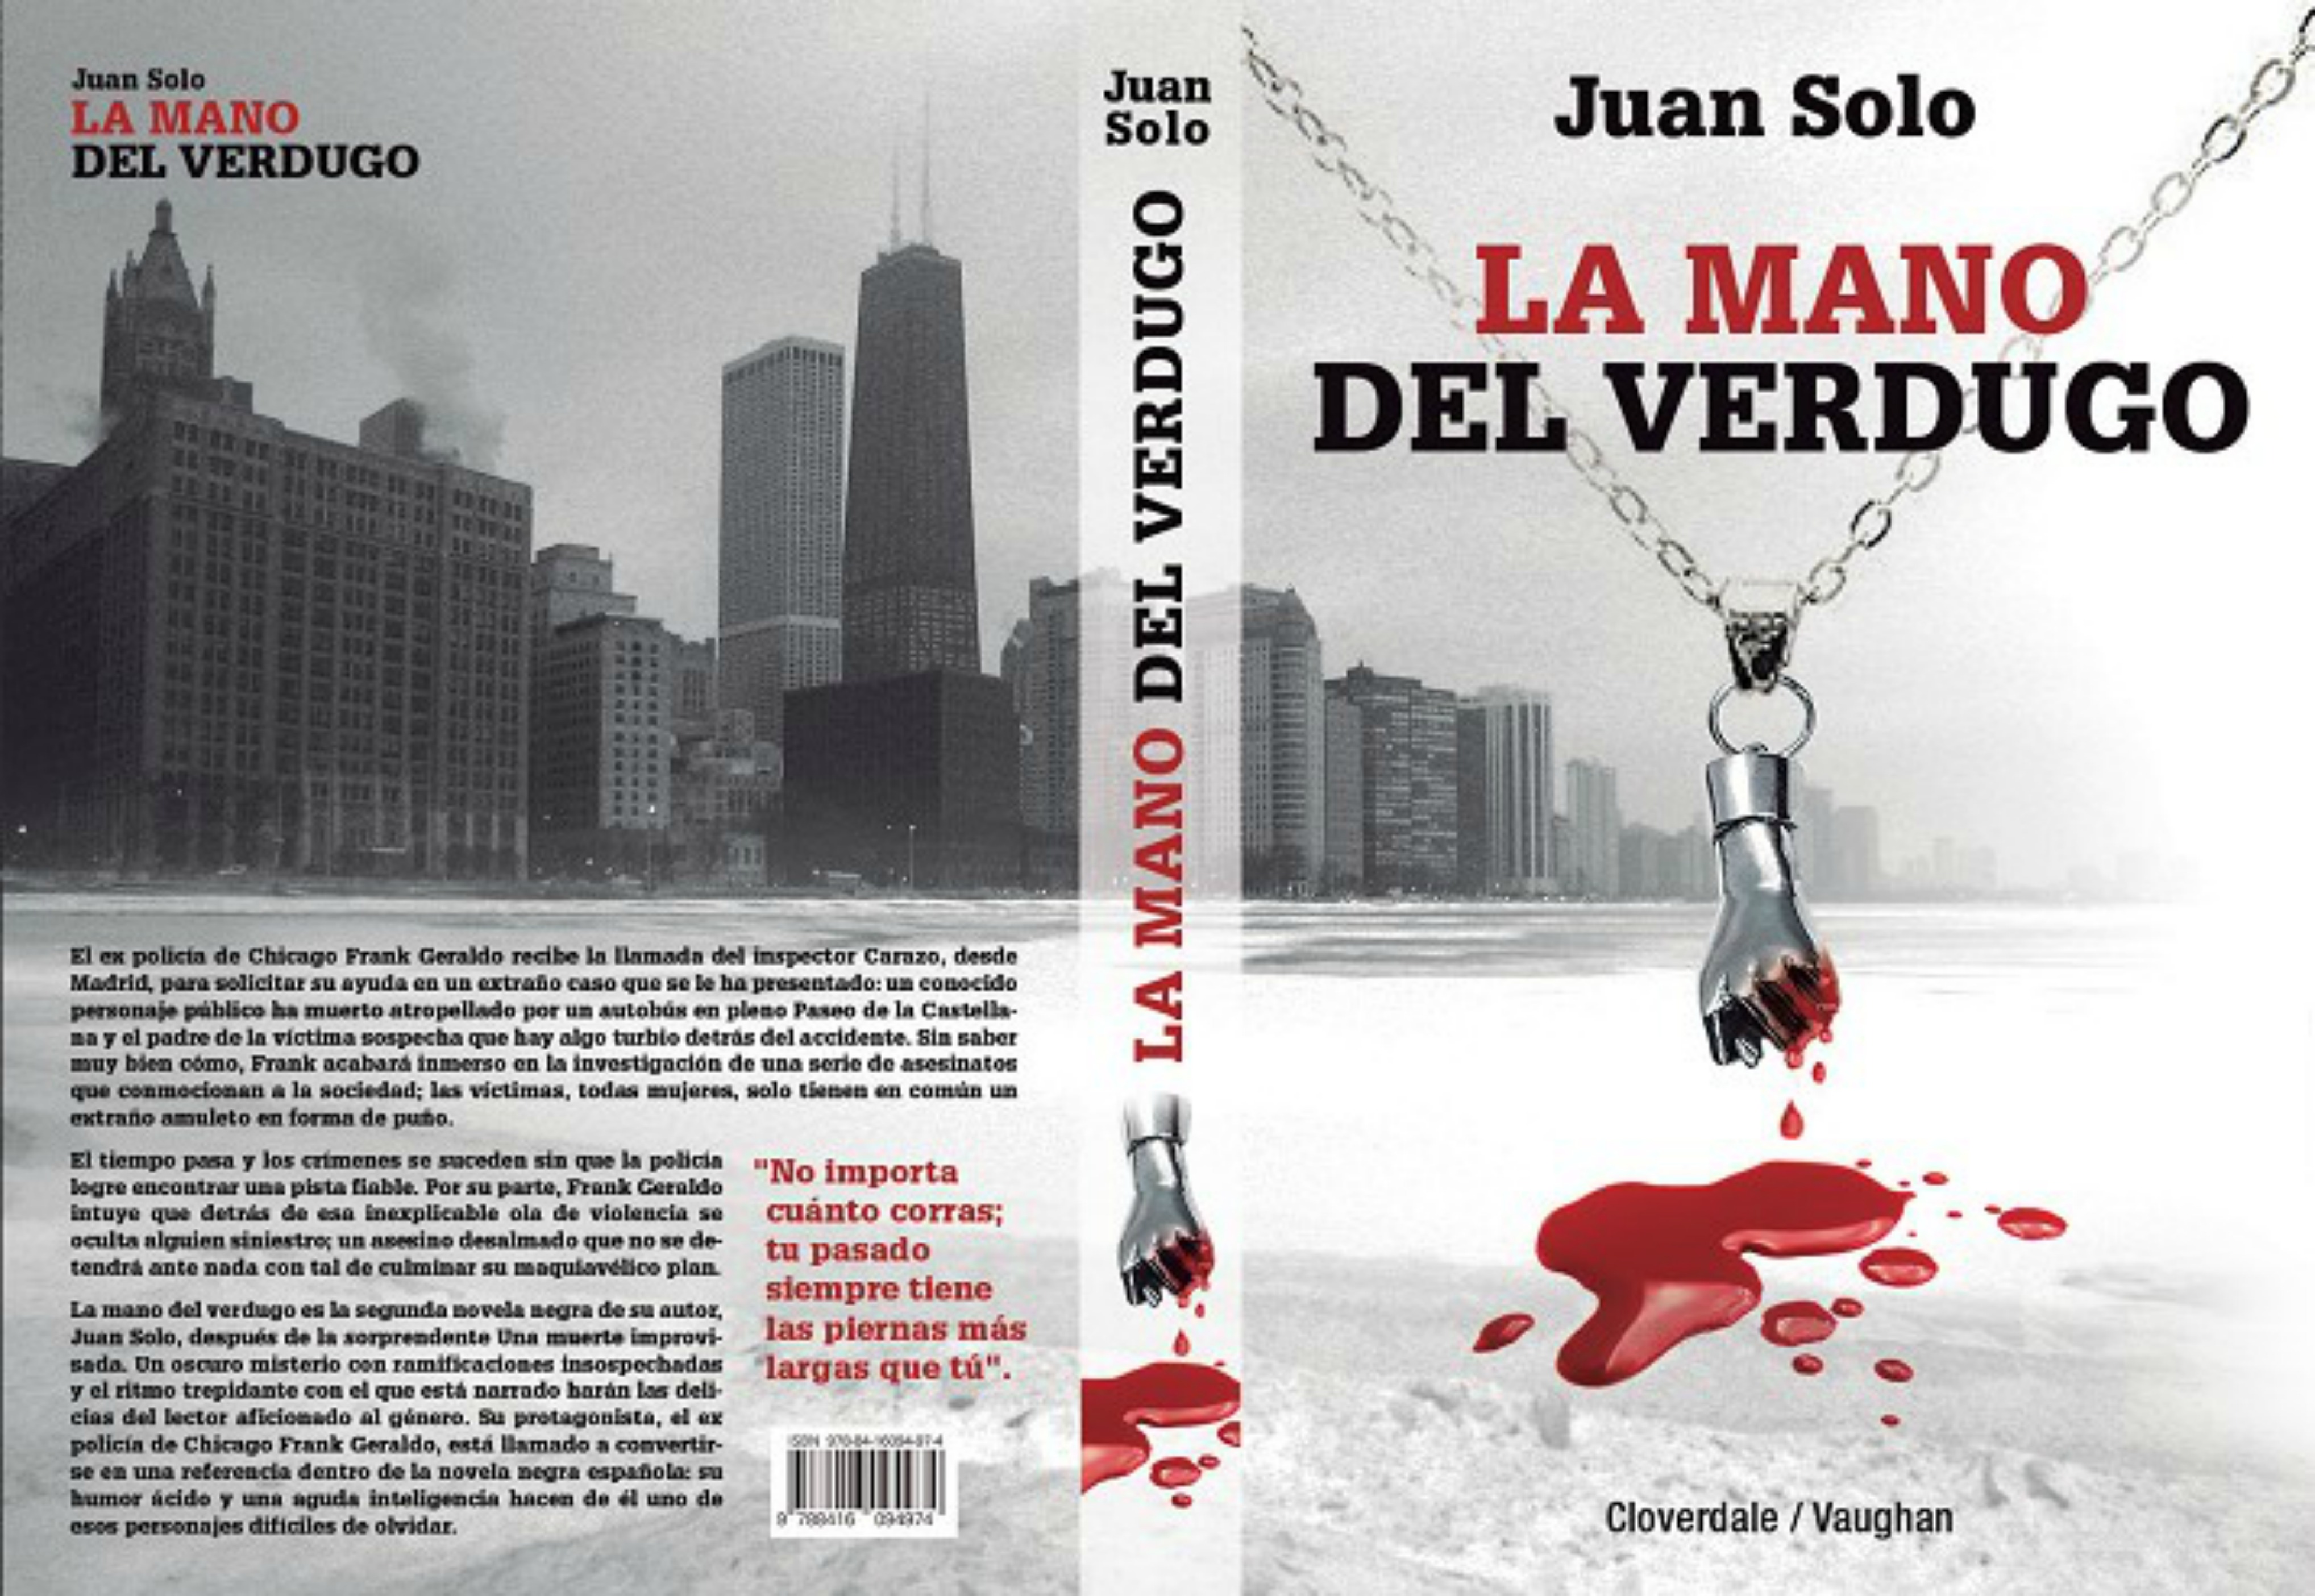 La mano del verdugo - Juan Solo - Cloverdale - Vaughan Libros - Novela negra - Juan Solo escritor de novela negra - #ManoVerdugo